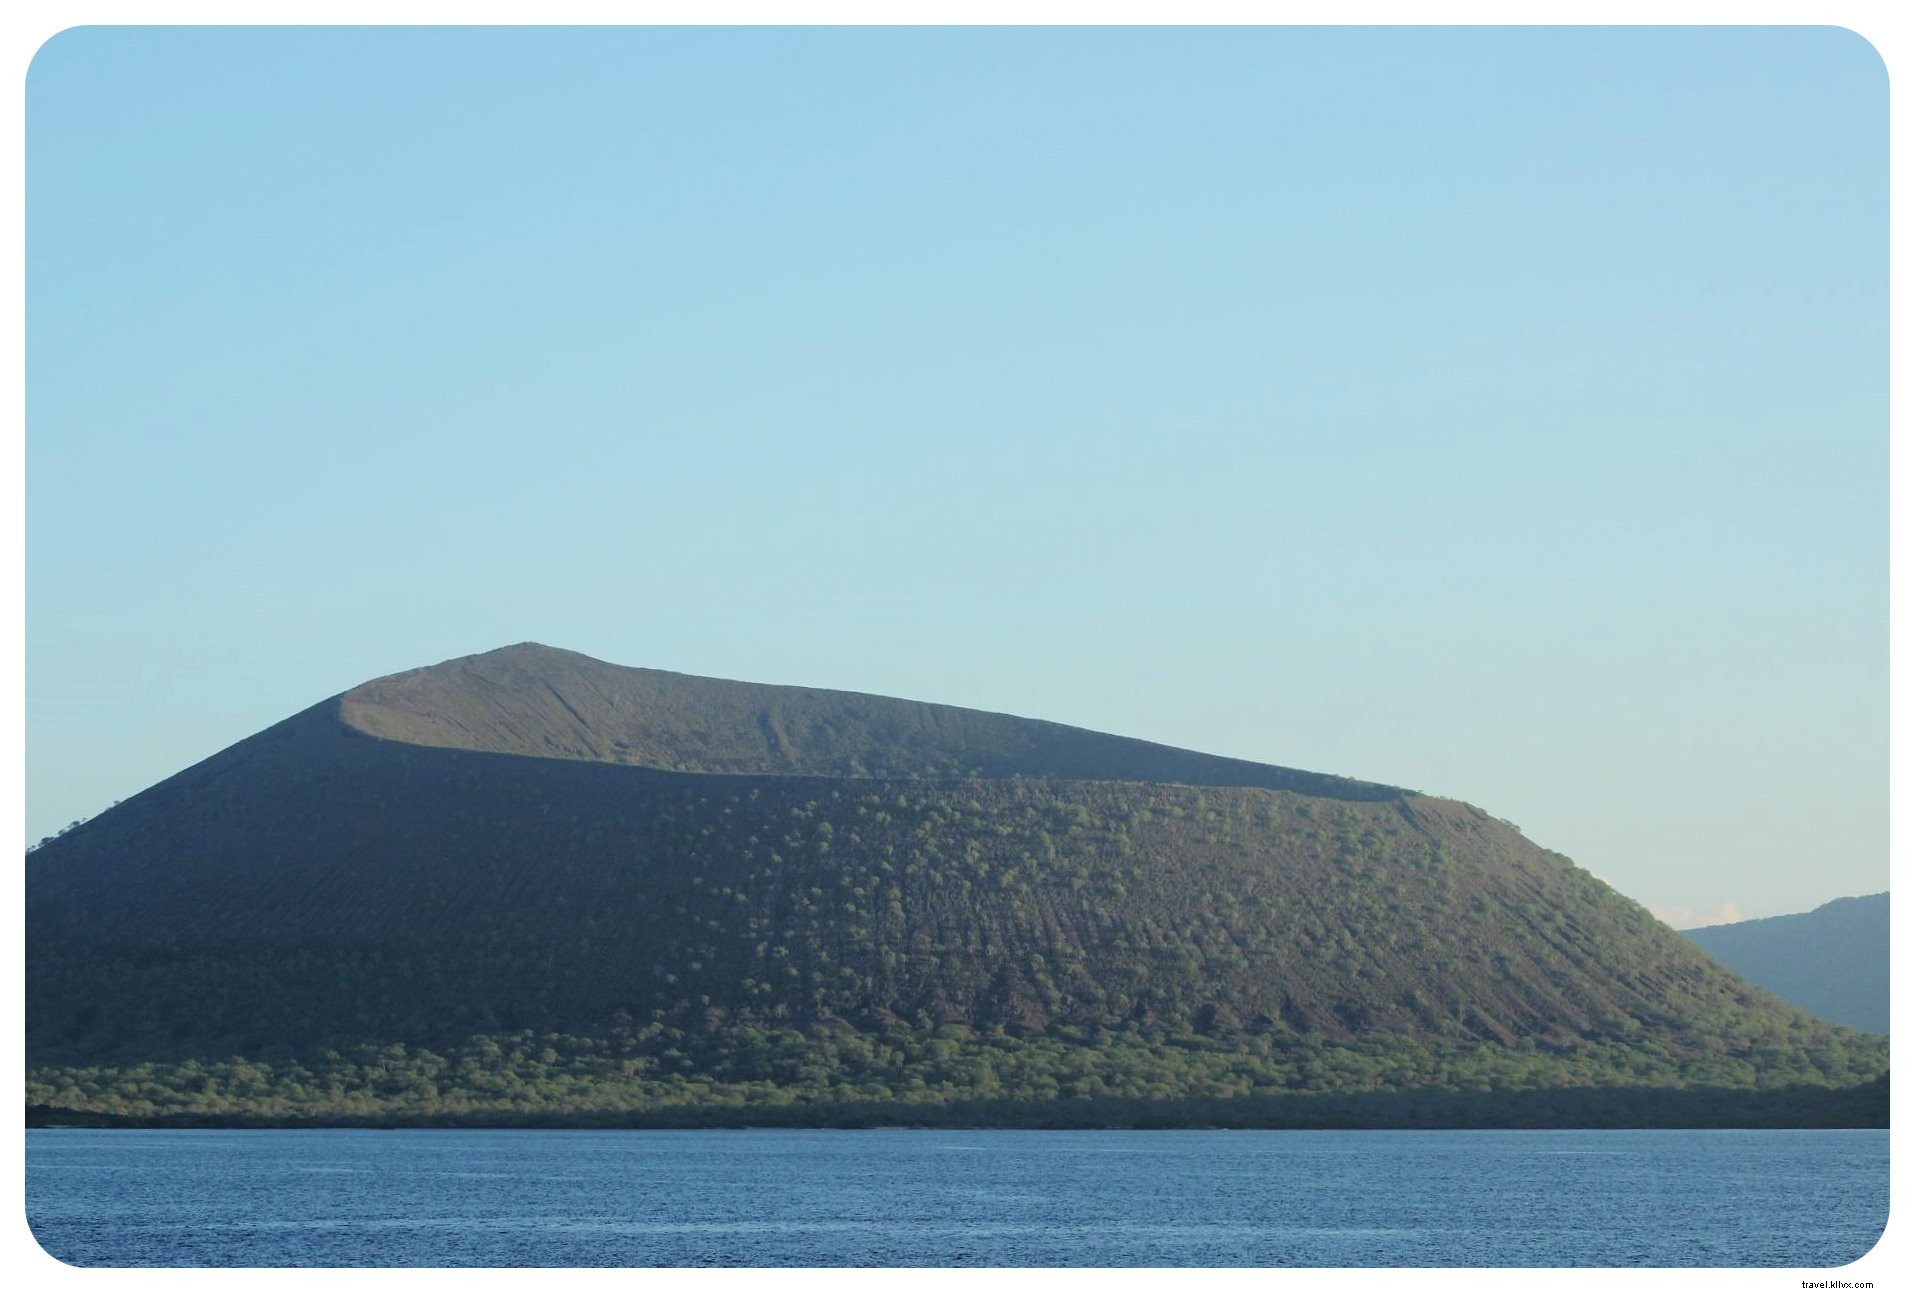 La mia crociera alle Isole Galapagos:un sogno di viaggio che diventa realtà